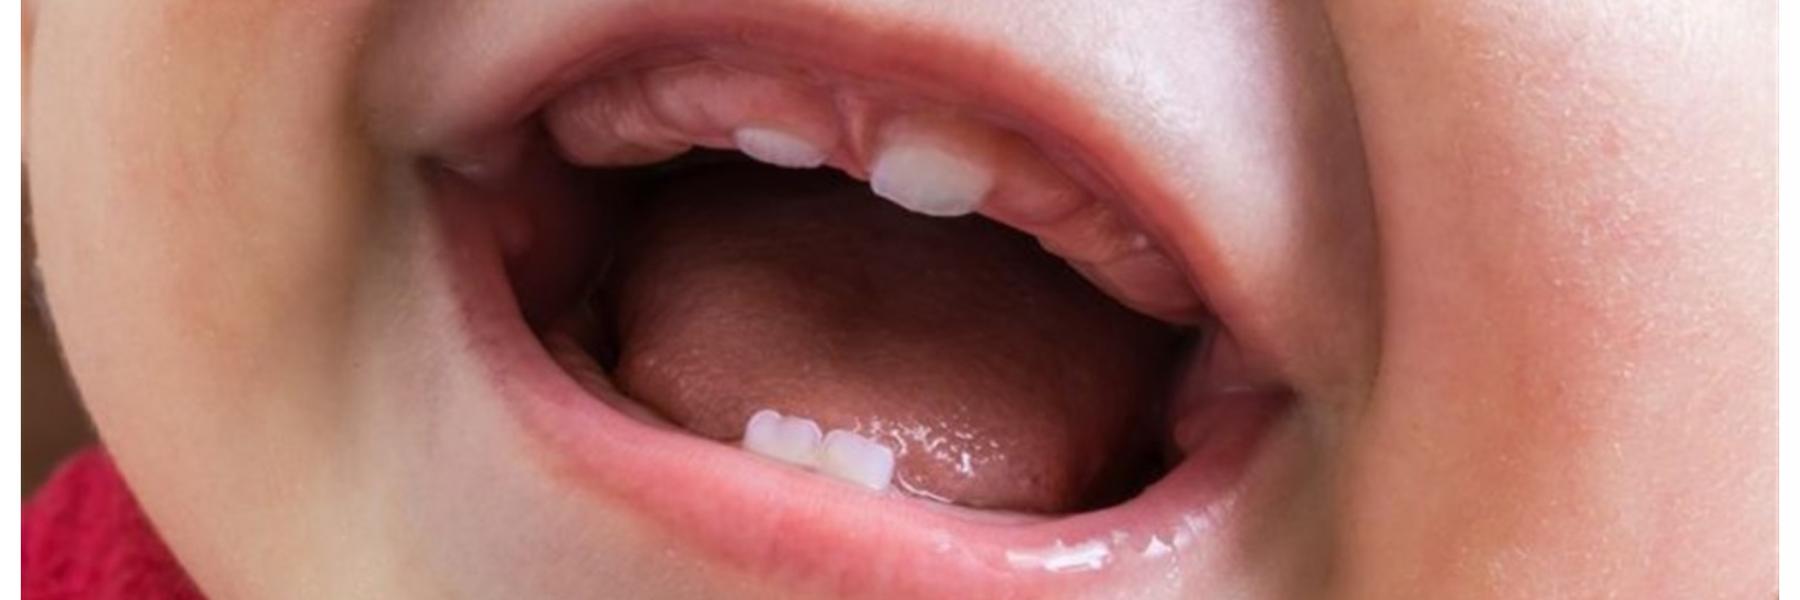 حساسية الفم لدى الأطفال